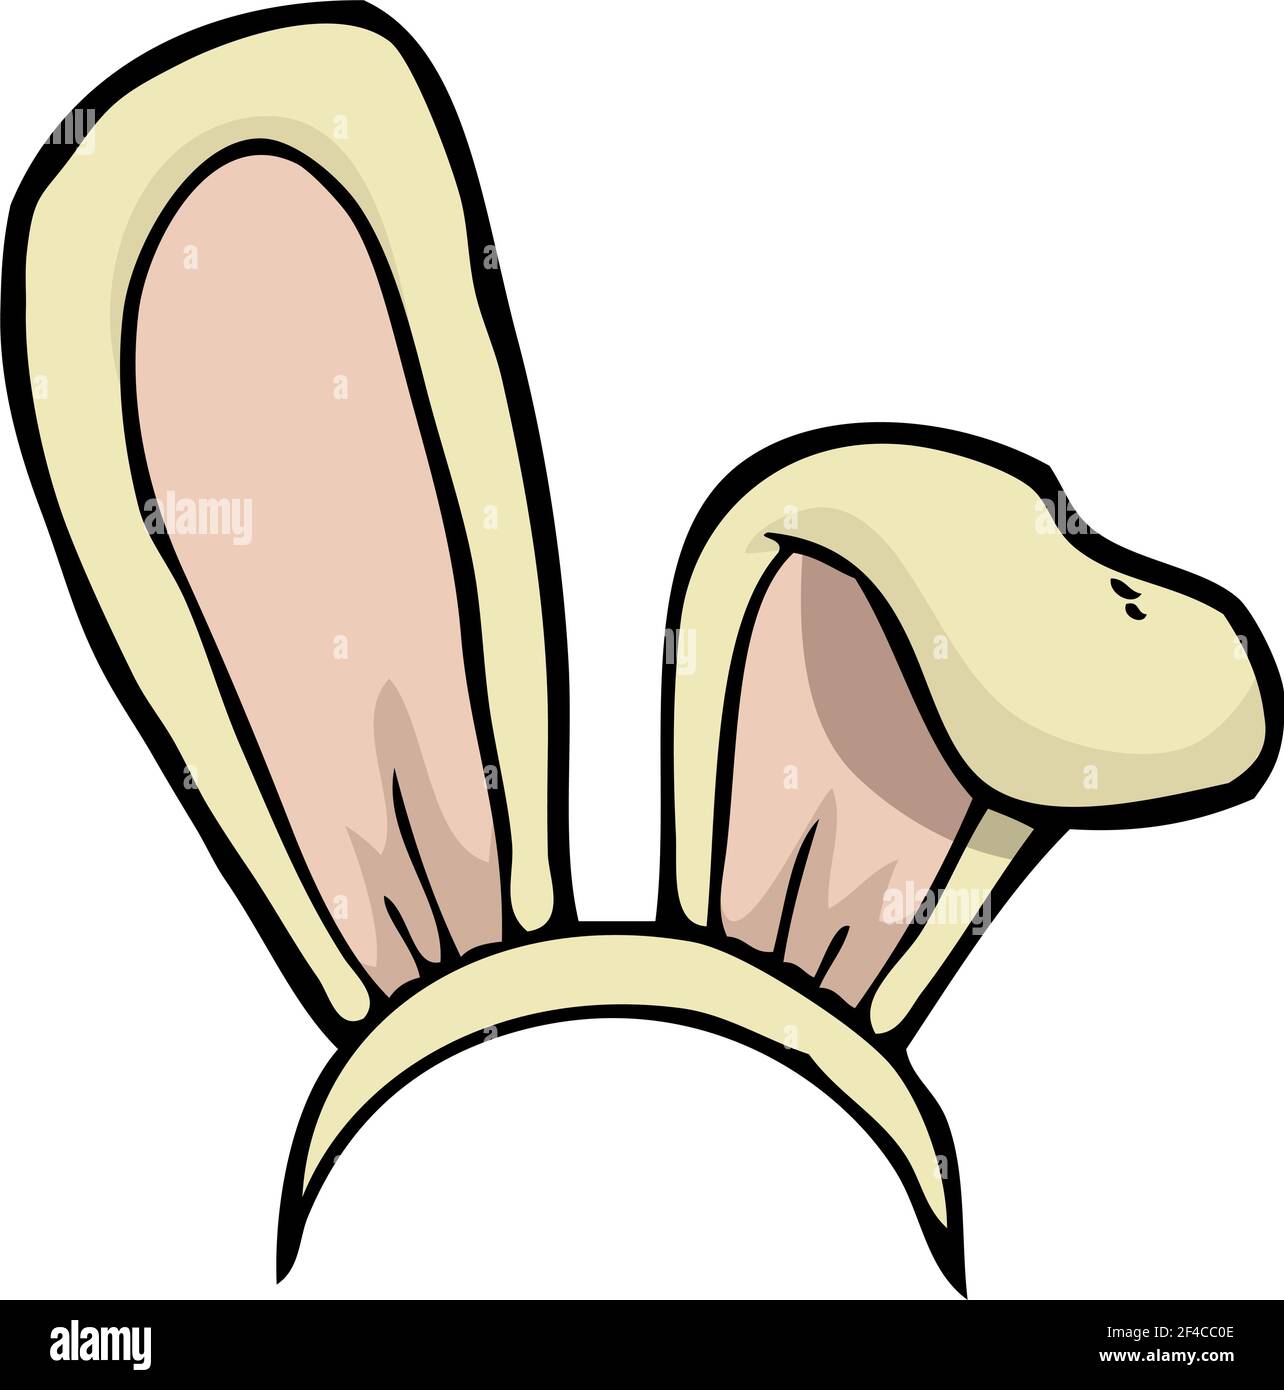 Oreilles de lapin de dessin animé sur un fond blanc vector illustration  Image Vectorielle Stock - Alamy